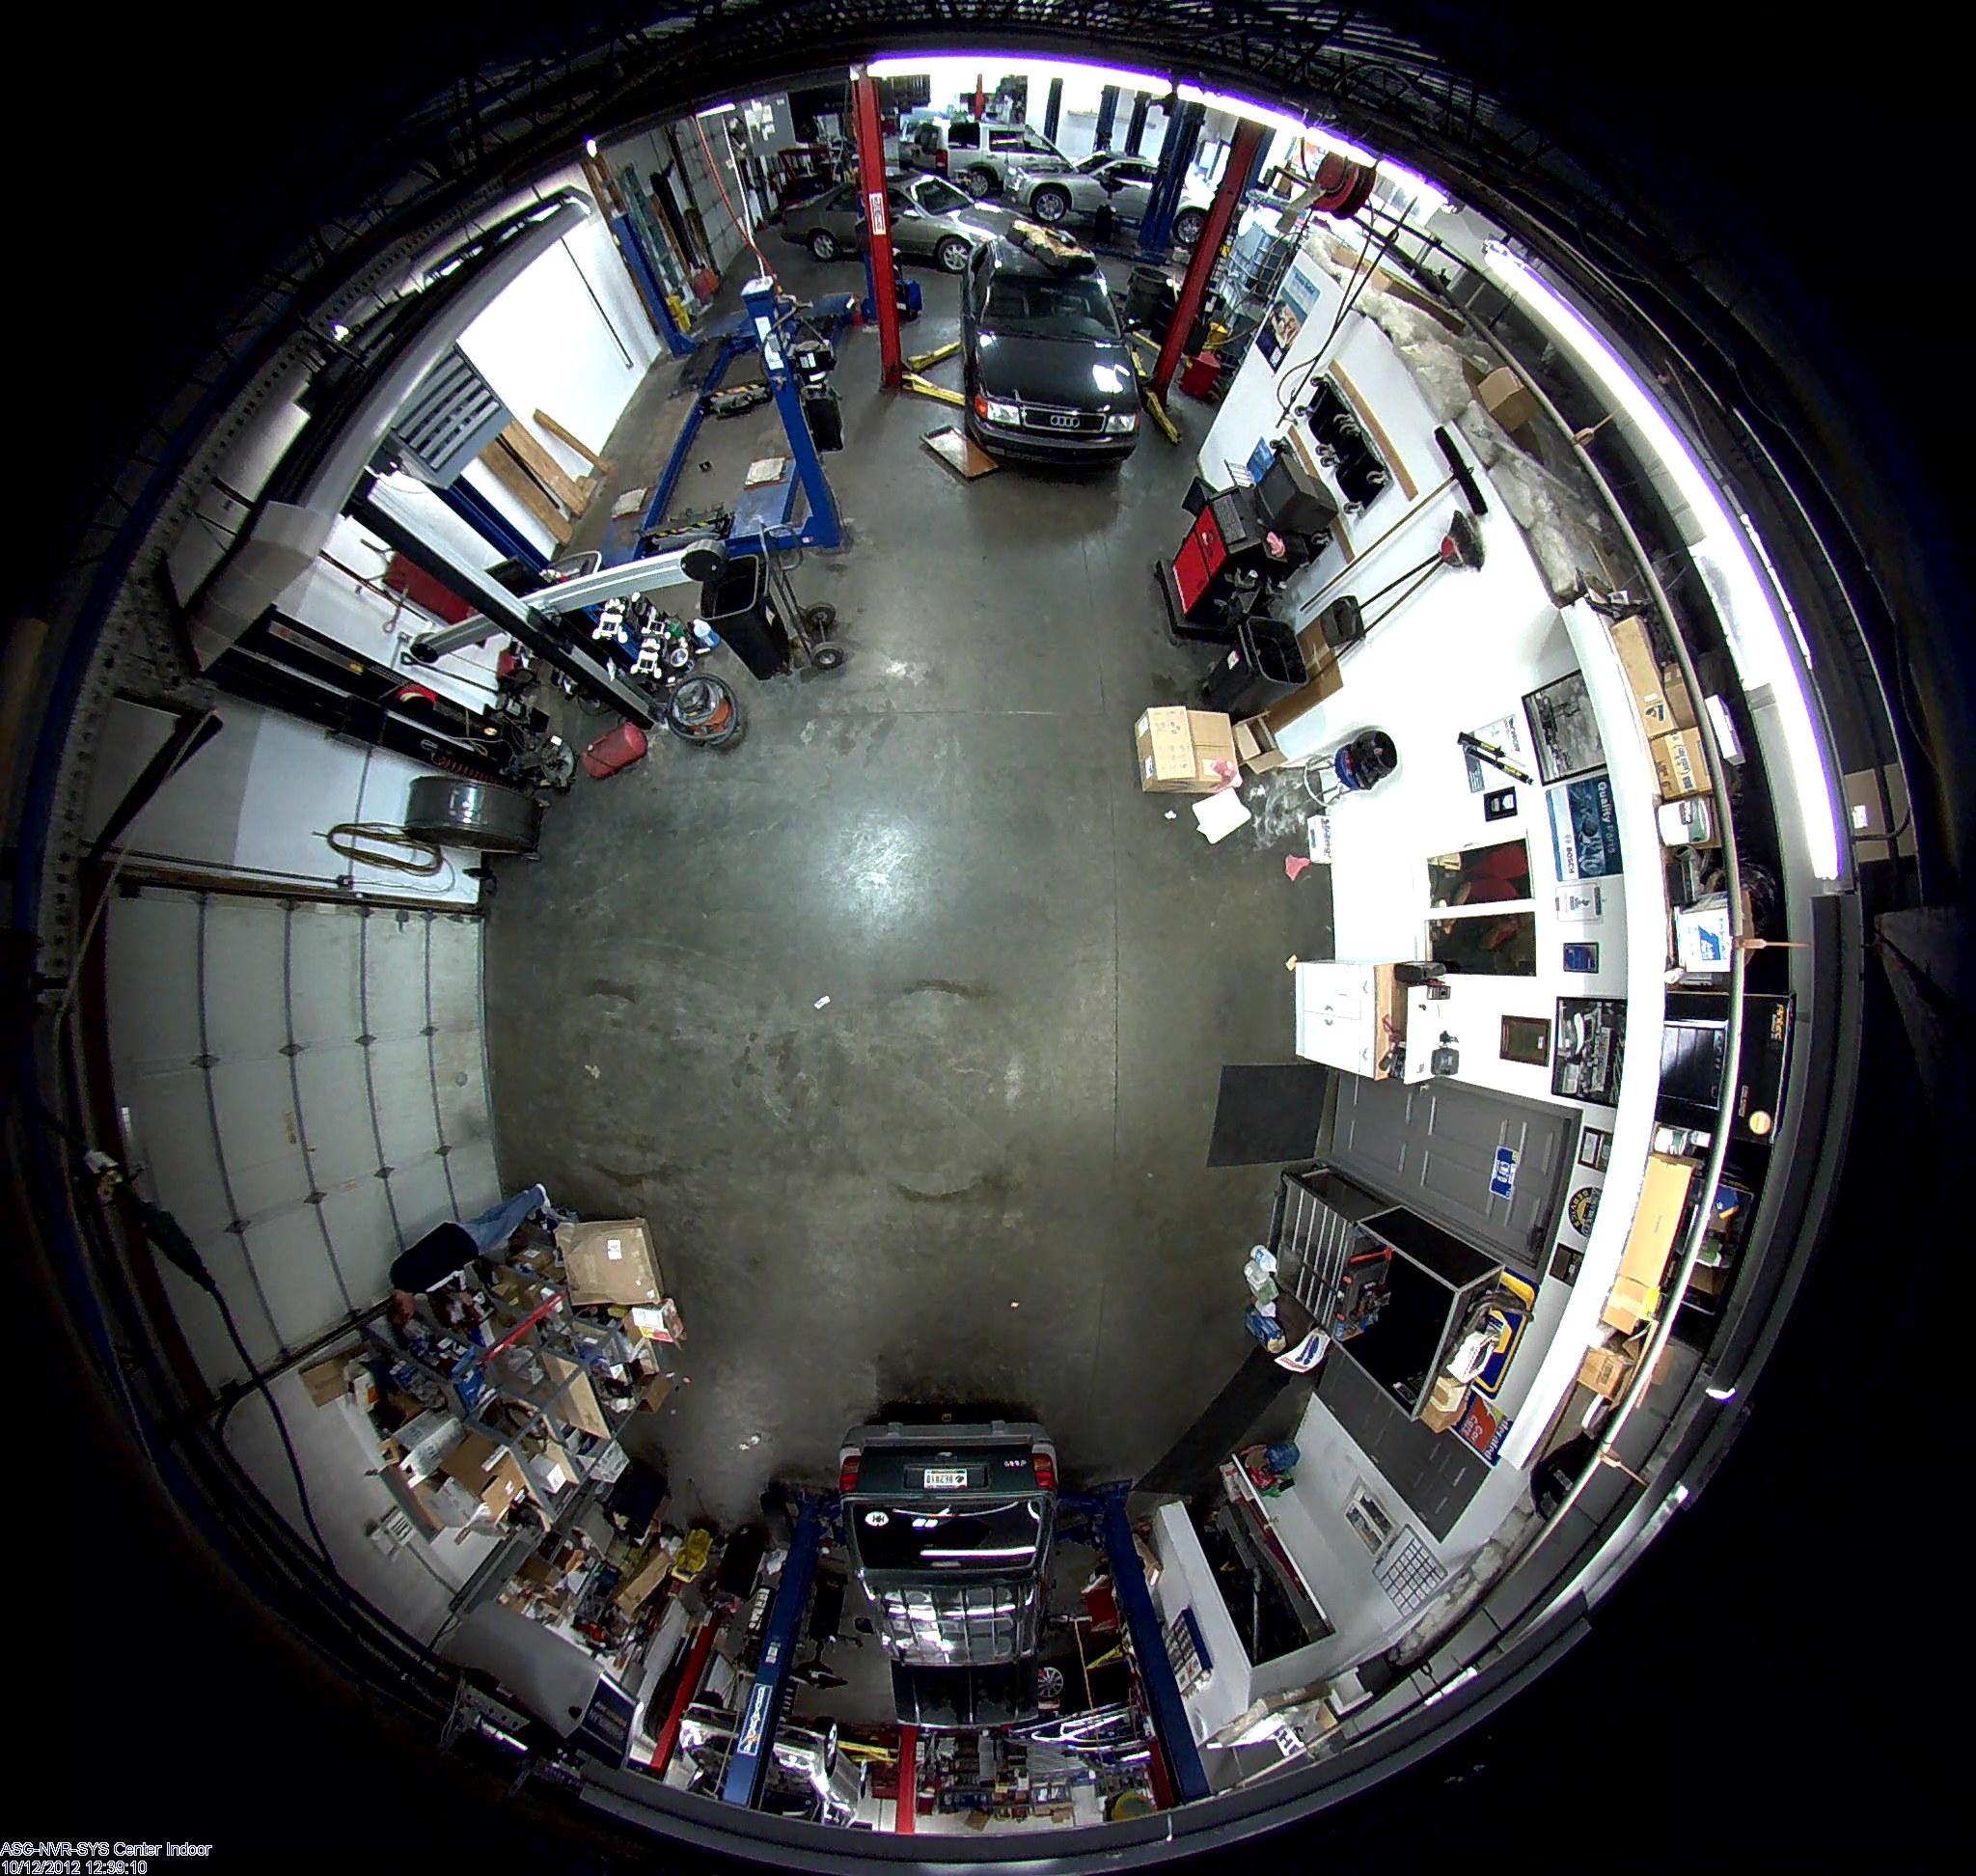 360 degree fisheye camera sample images Hoosier Security